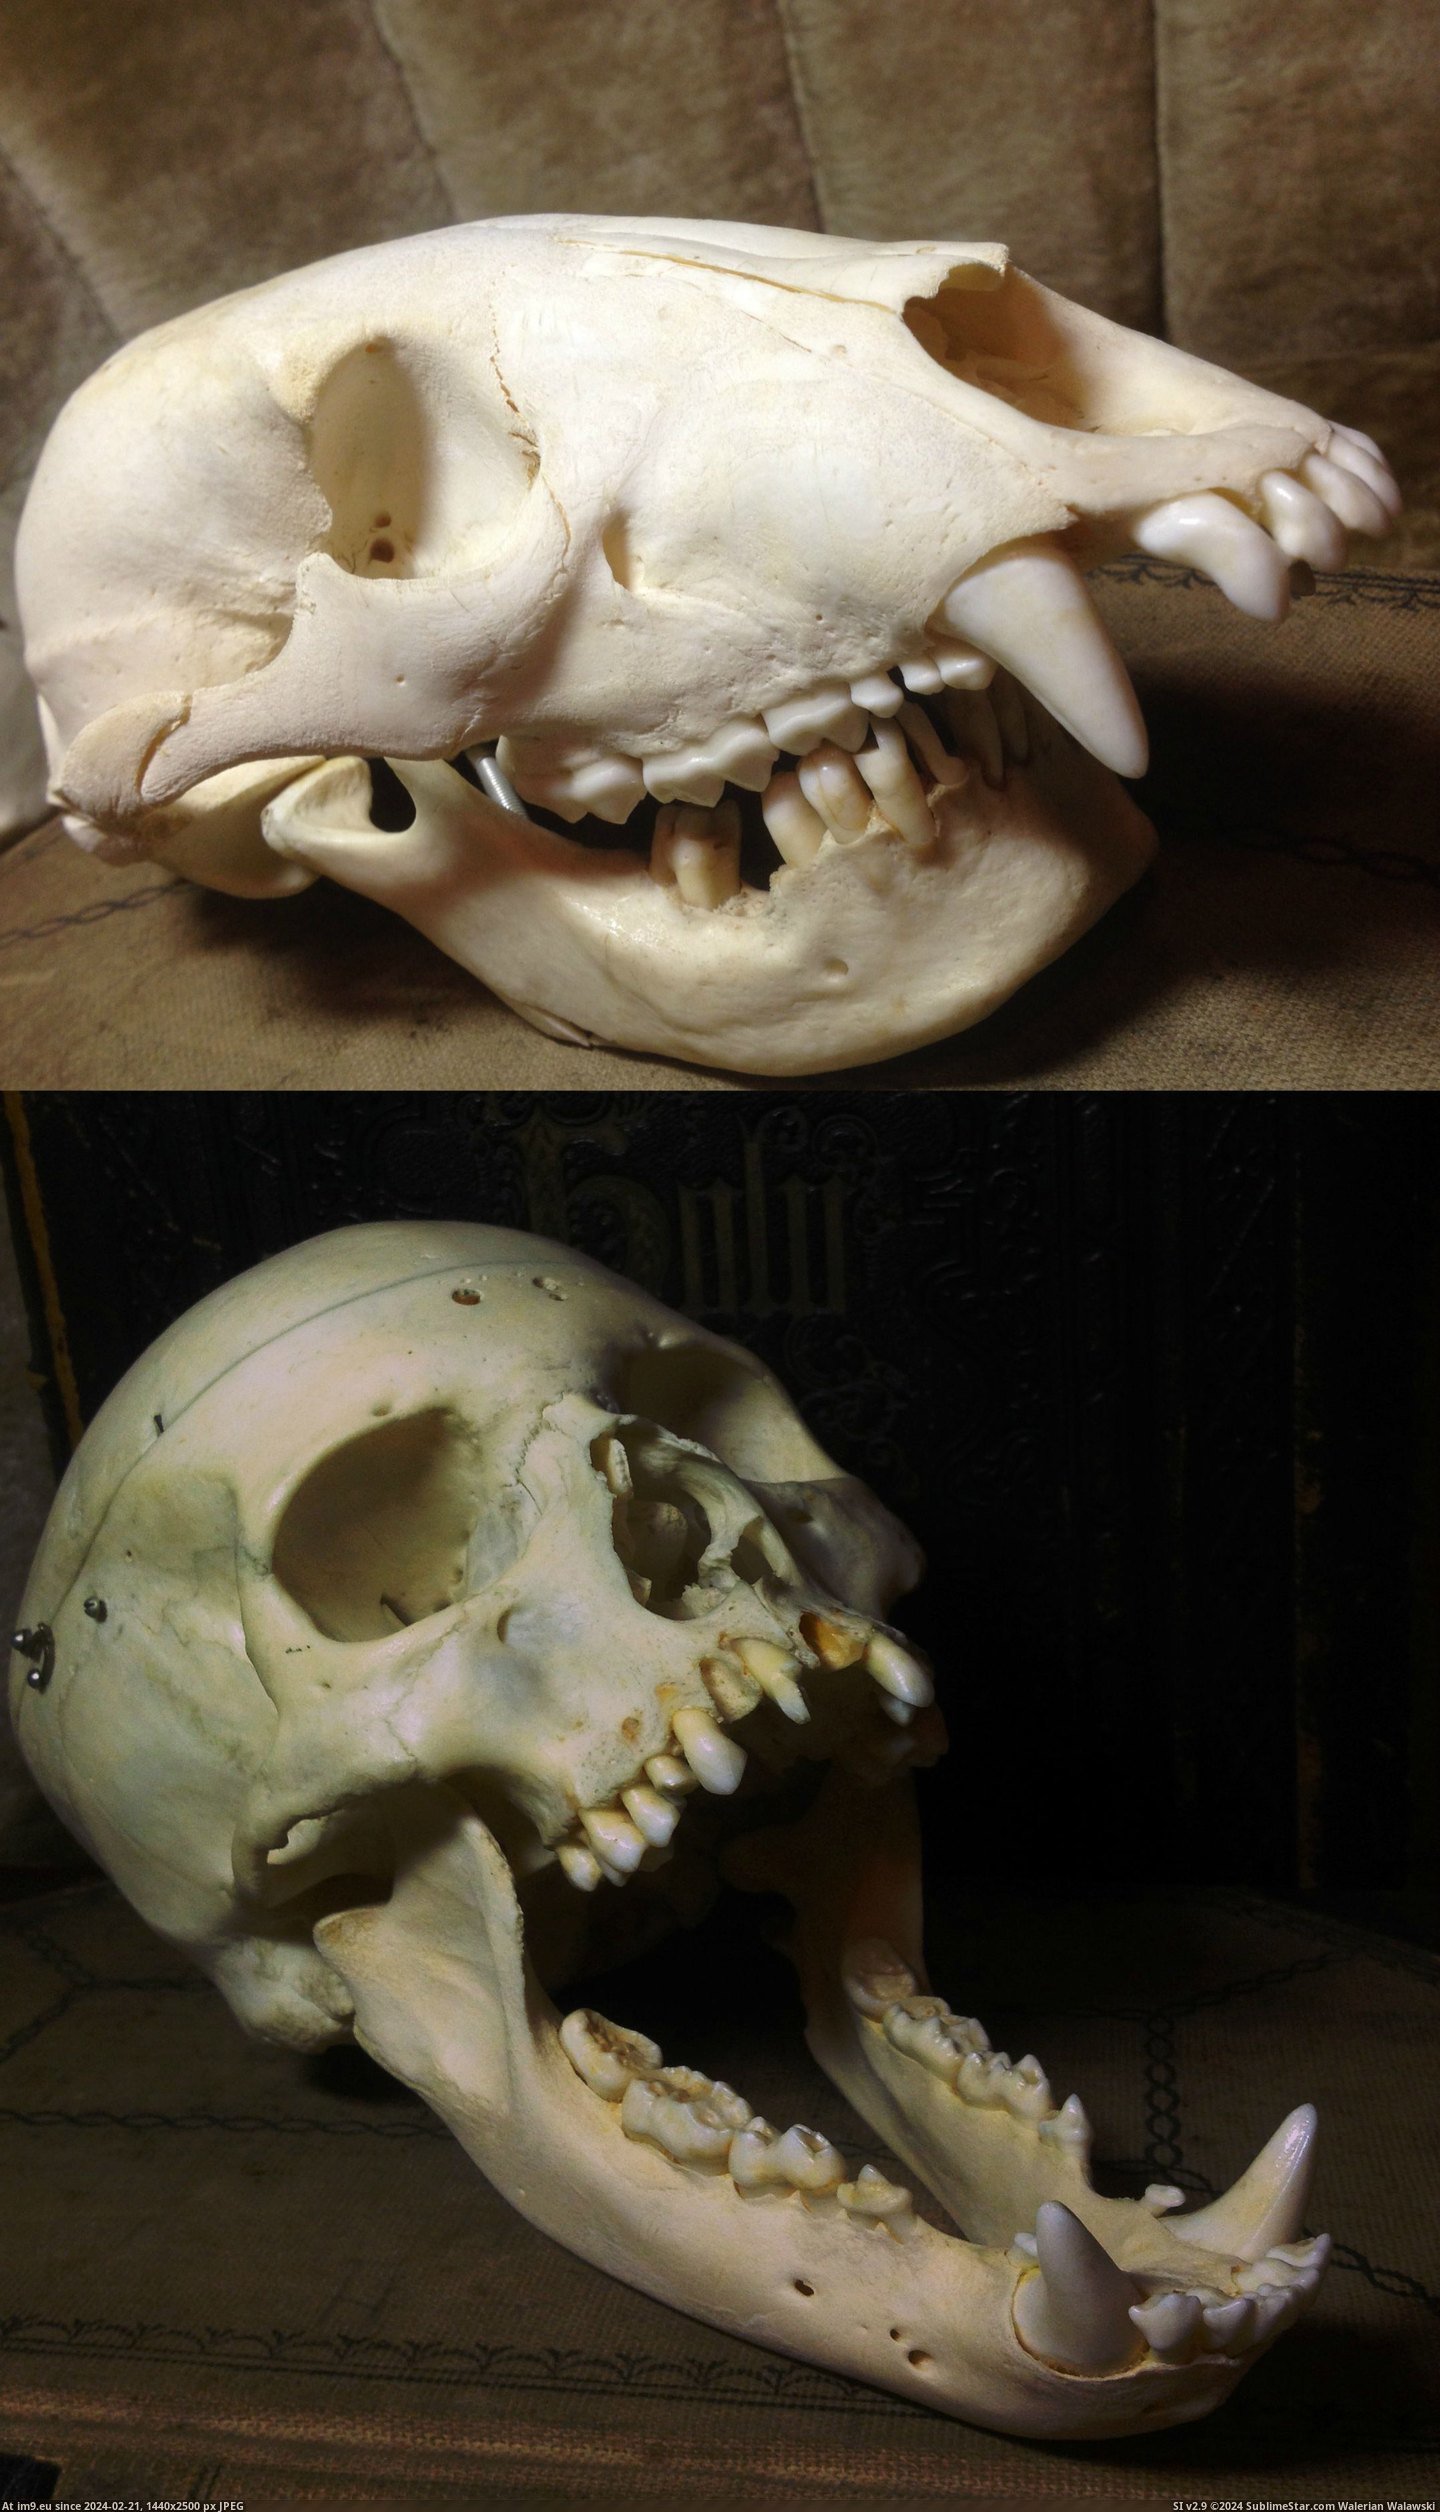 #Wtf #Human #Swap #Bear #Skull [Wtf] Human & Bear Skull Swap Pic. (Изображение из альбом My r/WTF favs))